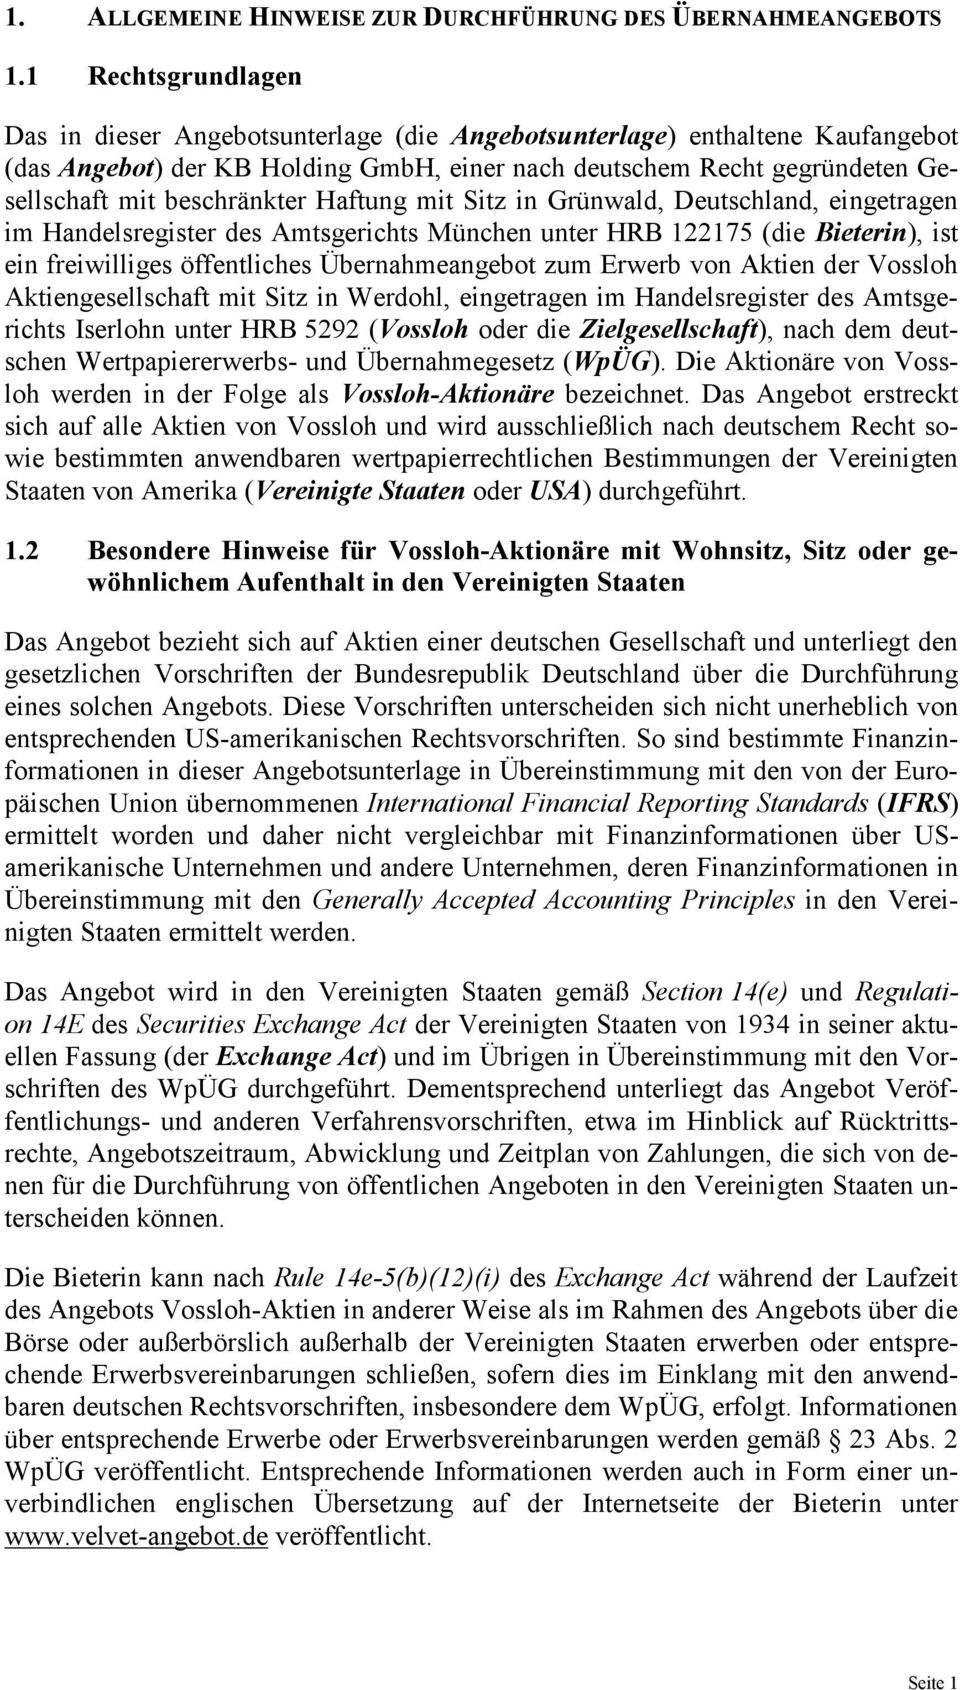 beschränkter Haftung mit Sitz in Grünwald, Deutschland, eingetragen im Handelsregister des Amtsgerichts München unter HRB 122175 (die Bieterin), ist ein freiwilliges öffentliches Übernahmeangebot zum